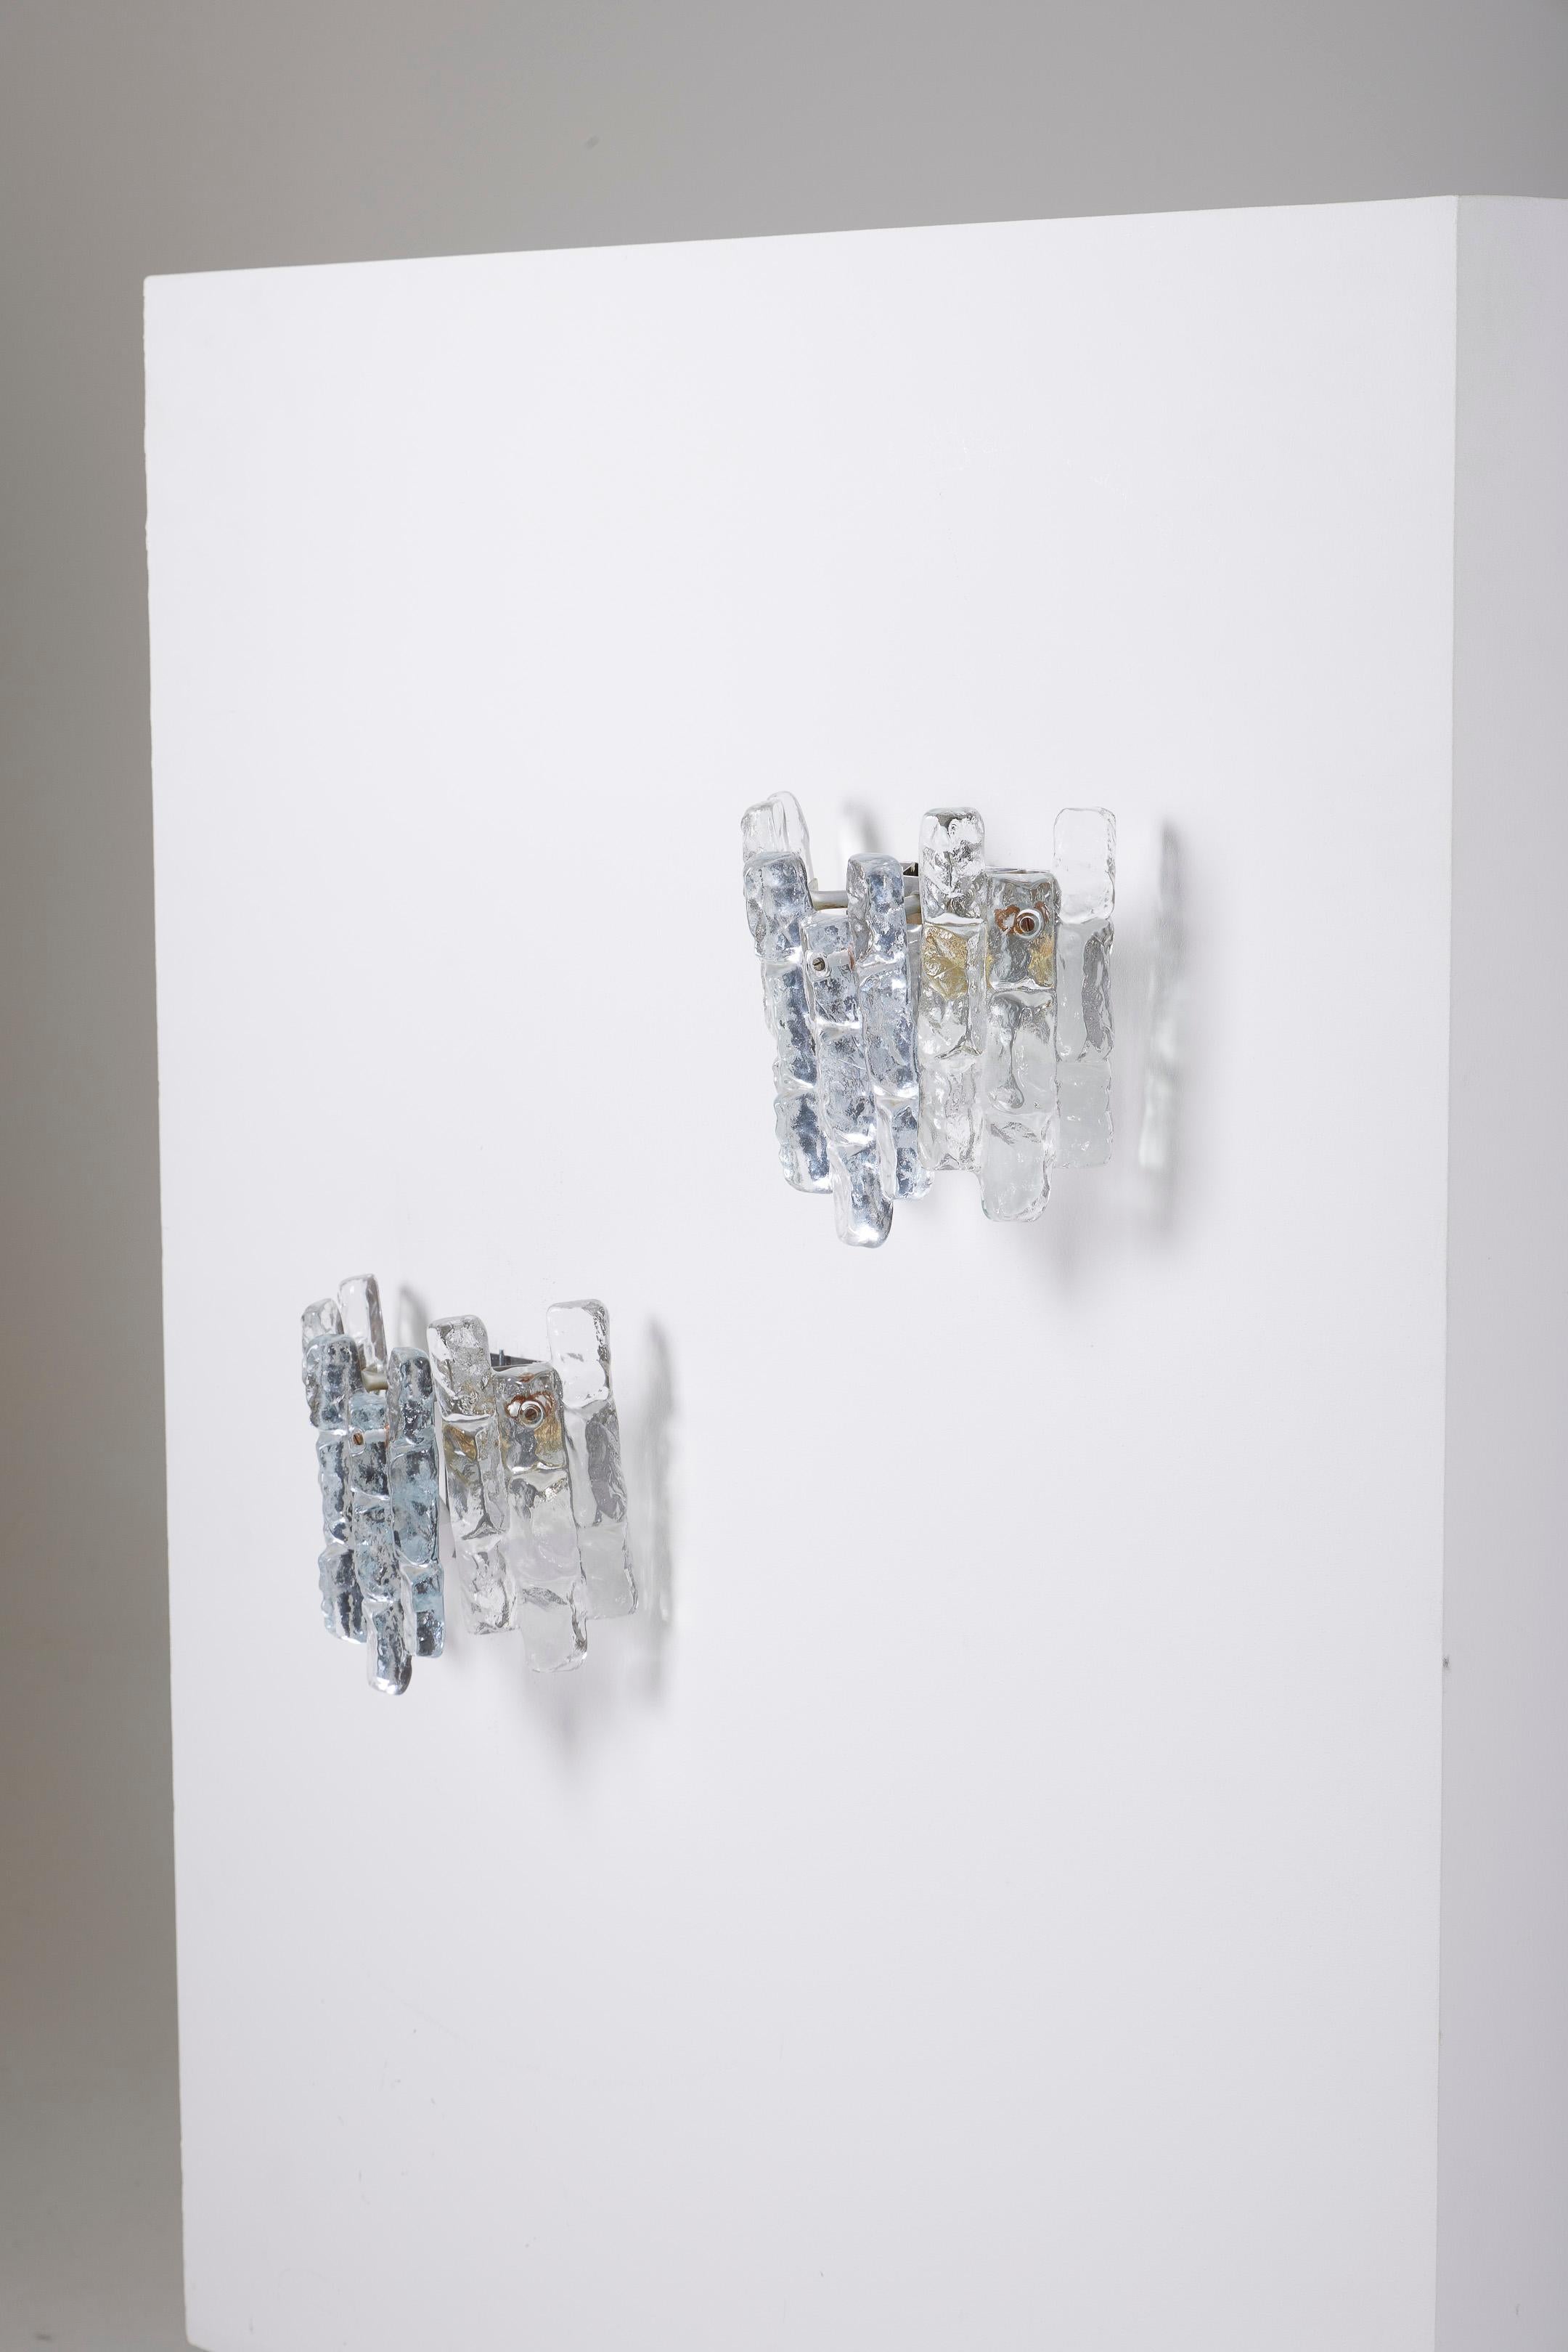 Ein Paar Sierra Ice Wandleuchten aus Glas des Designers Julius Theodor Kalmar (1884-1968) für Kalmar Franken KG, Österreich, aus den 1960er Jahren. Das Reliefglas erzeugt einen schönen Leuchteffekt, wenn die Wandleuchter beleuchtet werden. Insgesamt